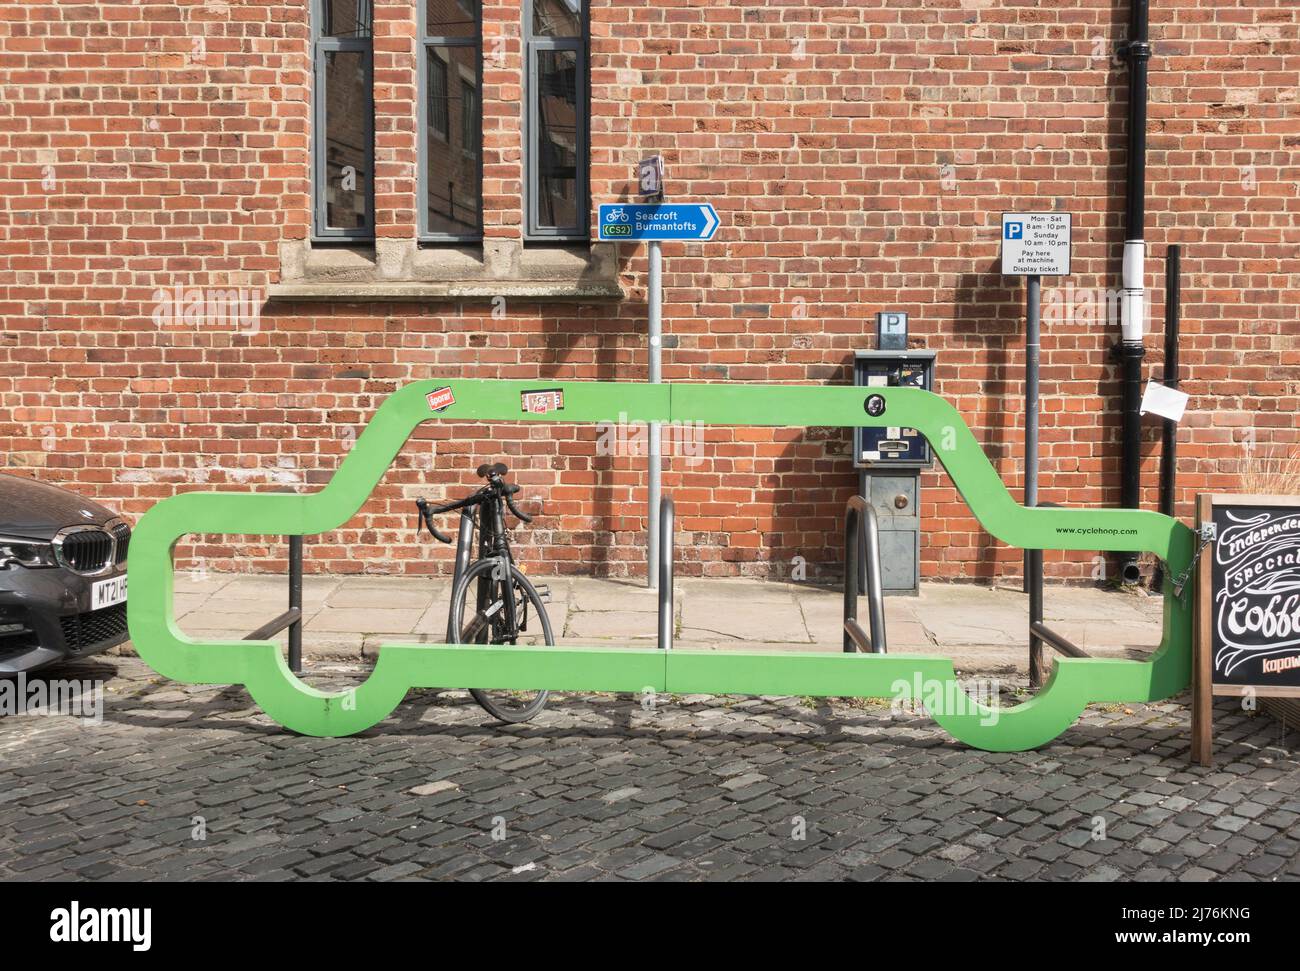 Un Cyclehoop car Bike Port, un espace réservé pour le parking à vélos dans le centre-ville de Leeds, Yorkshire, Angleterre, Royaume-Uni Banque D'Images